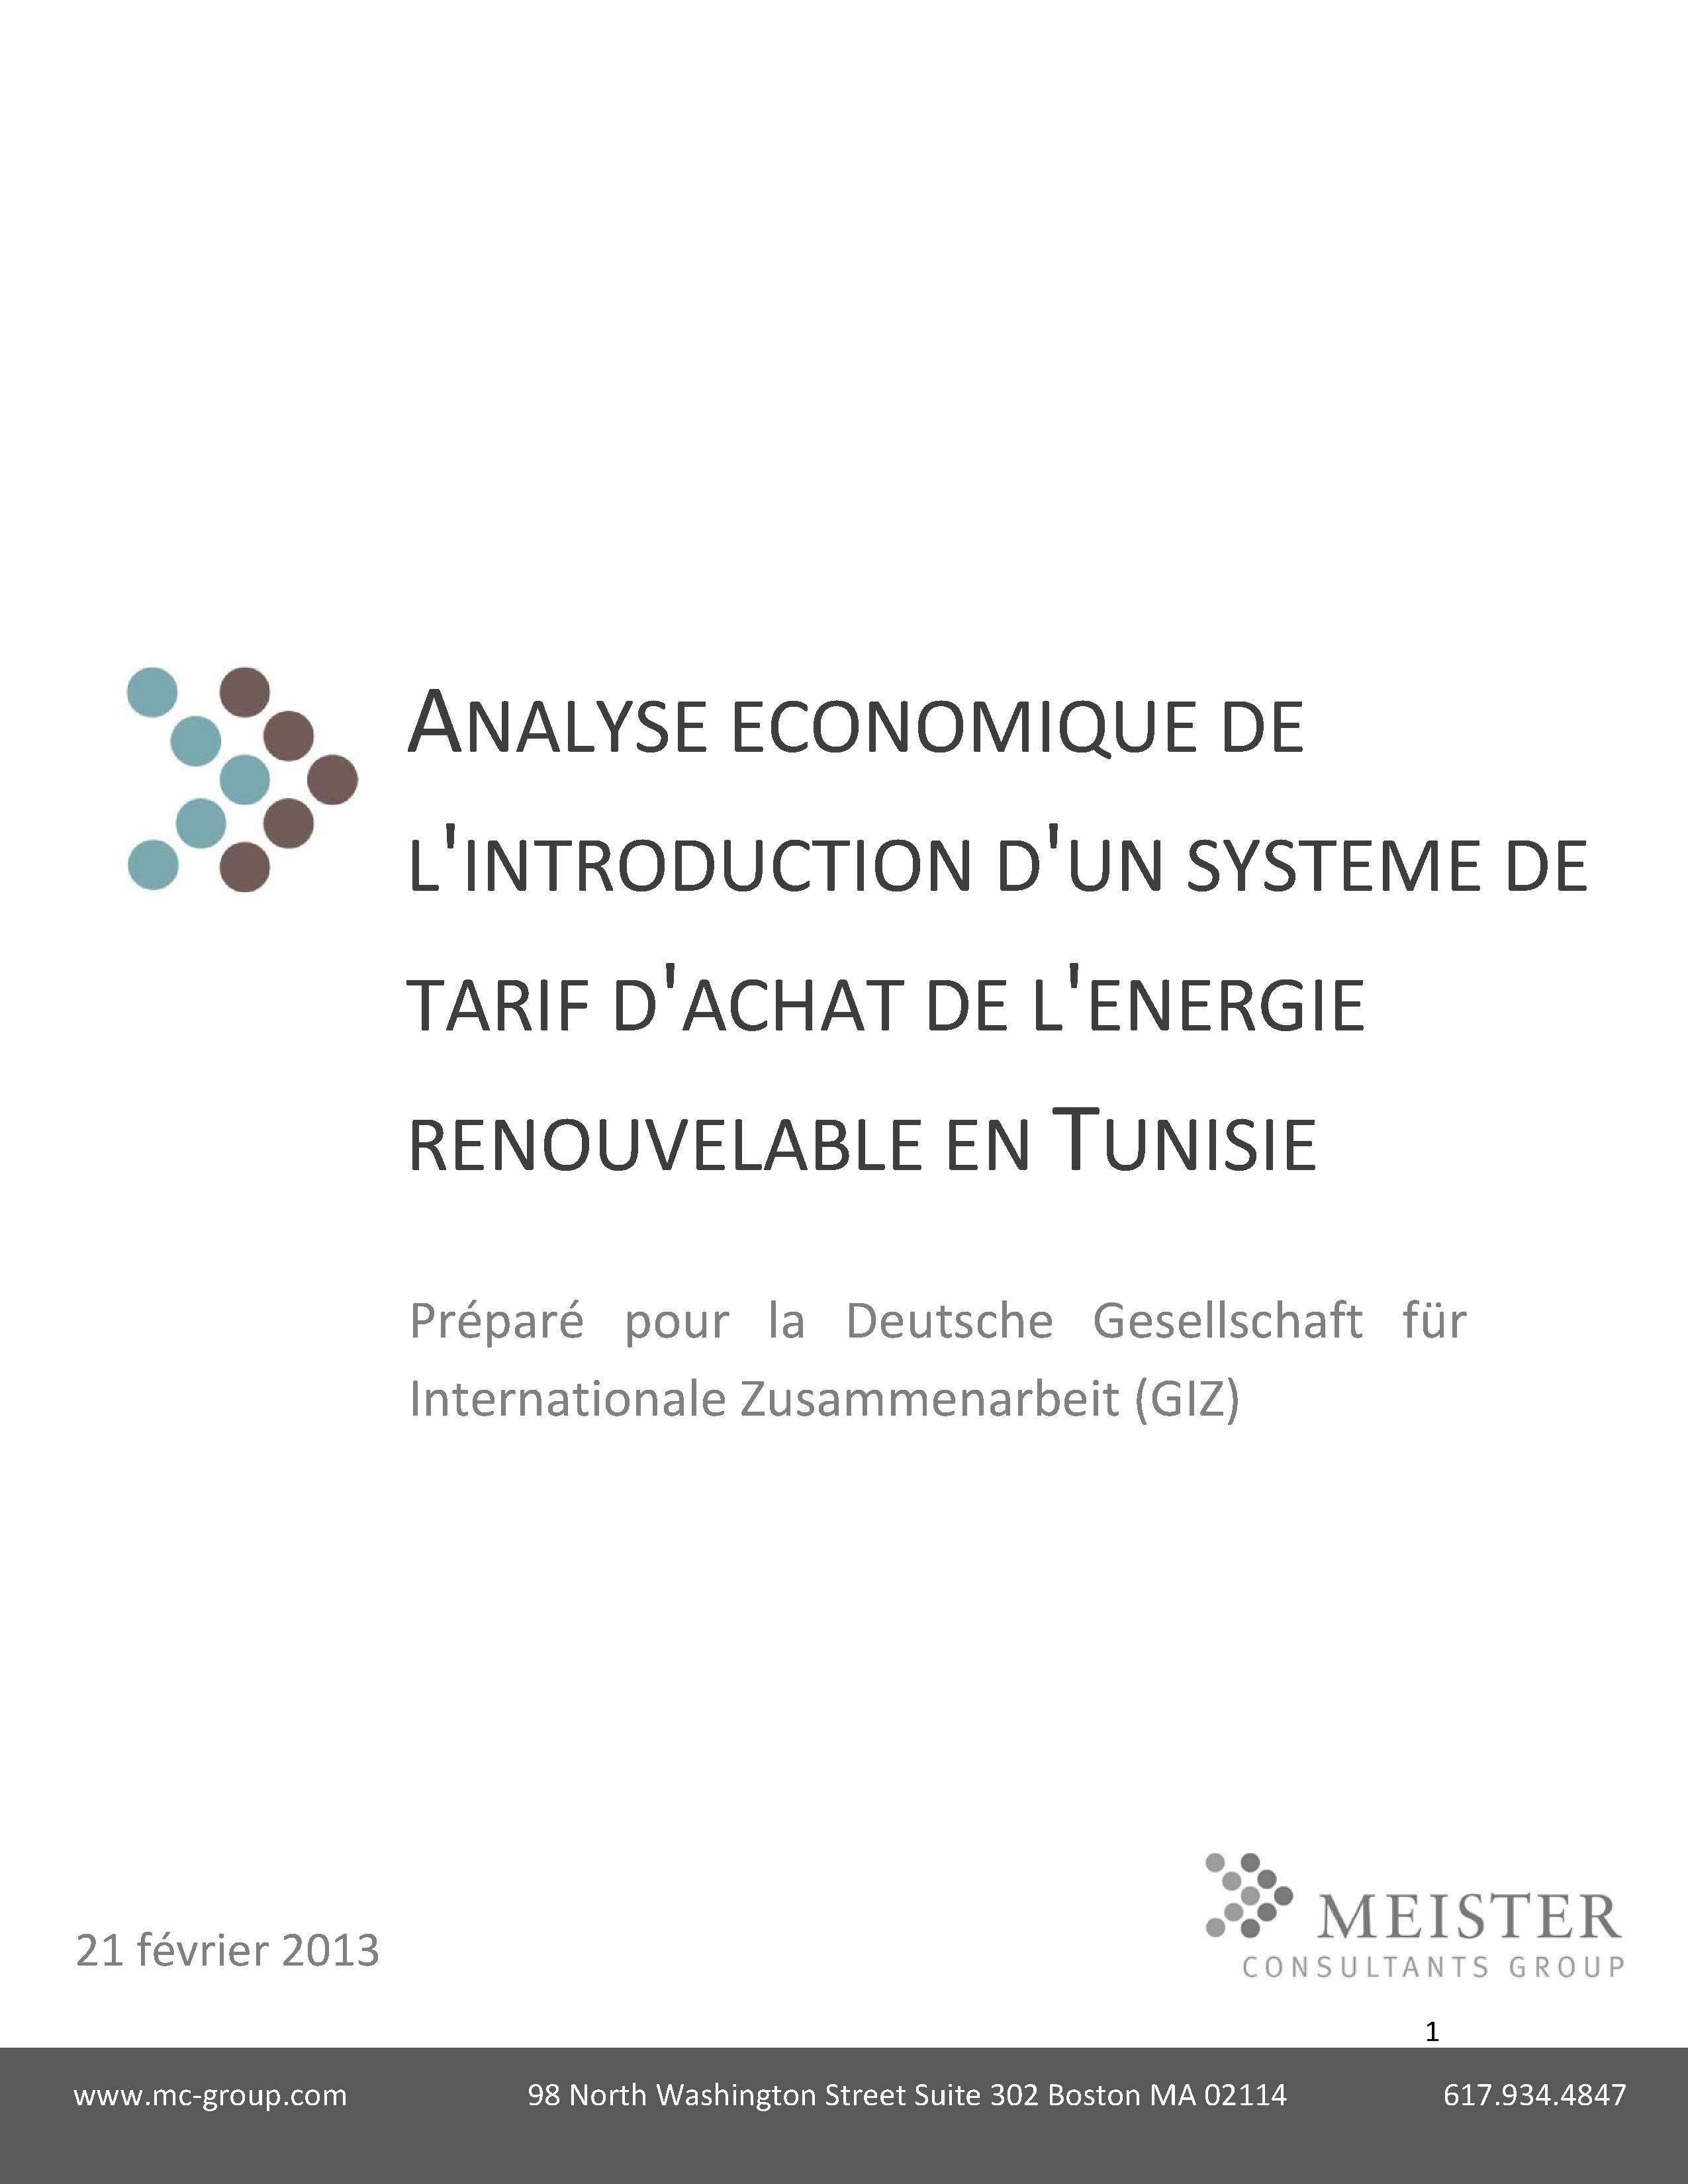 «Analyse économique de l'introduction d'un système de tarif de l'achat de l'energie renouvelable en Tunisie», Meister Consultants Group/GIZ (2013)